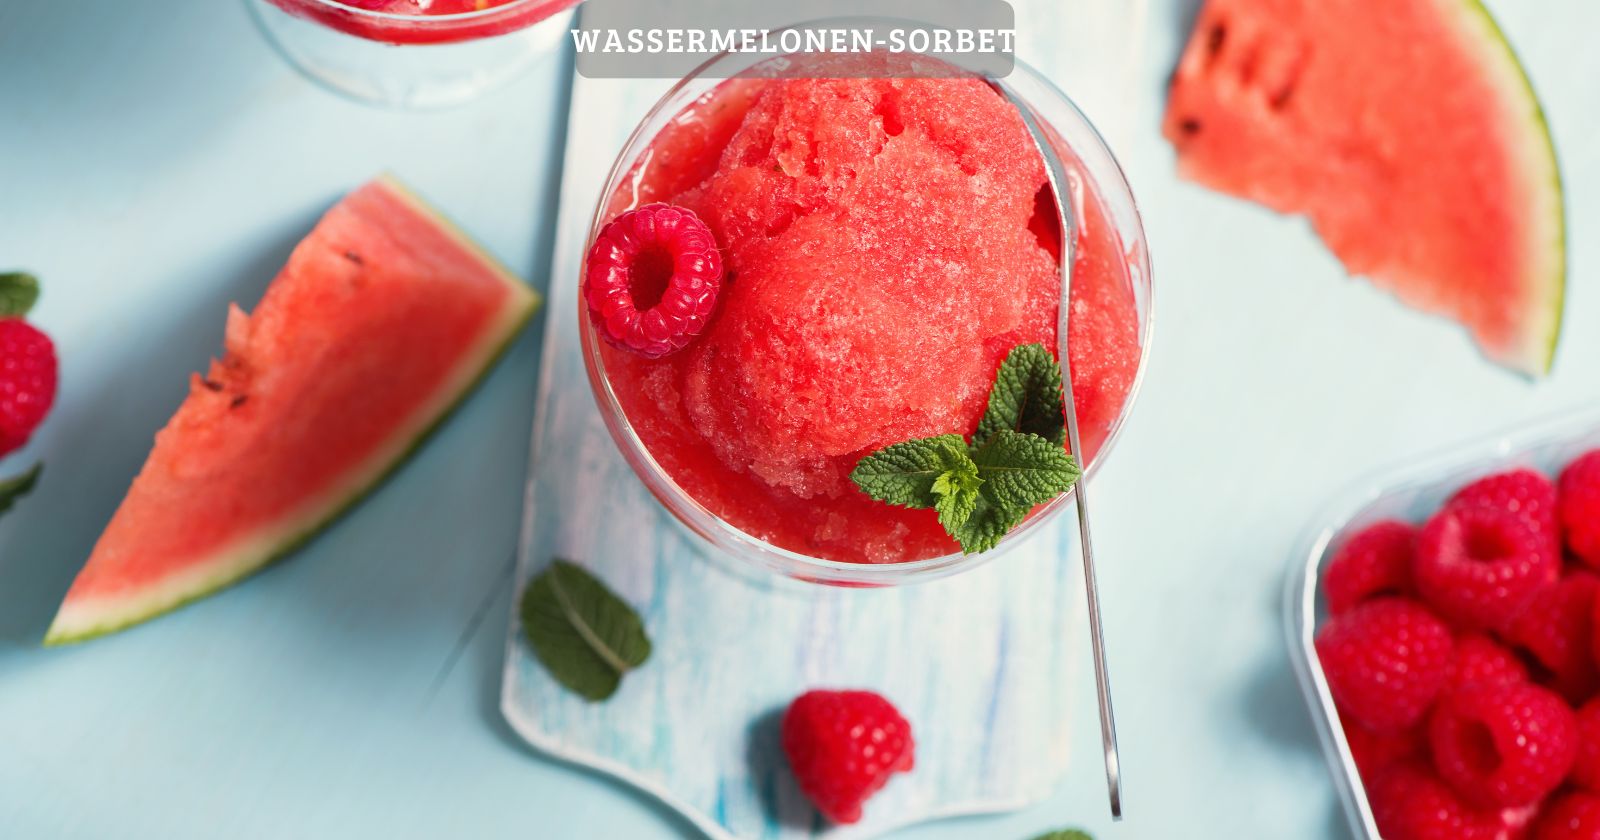 Wassermelonen-sorbet